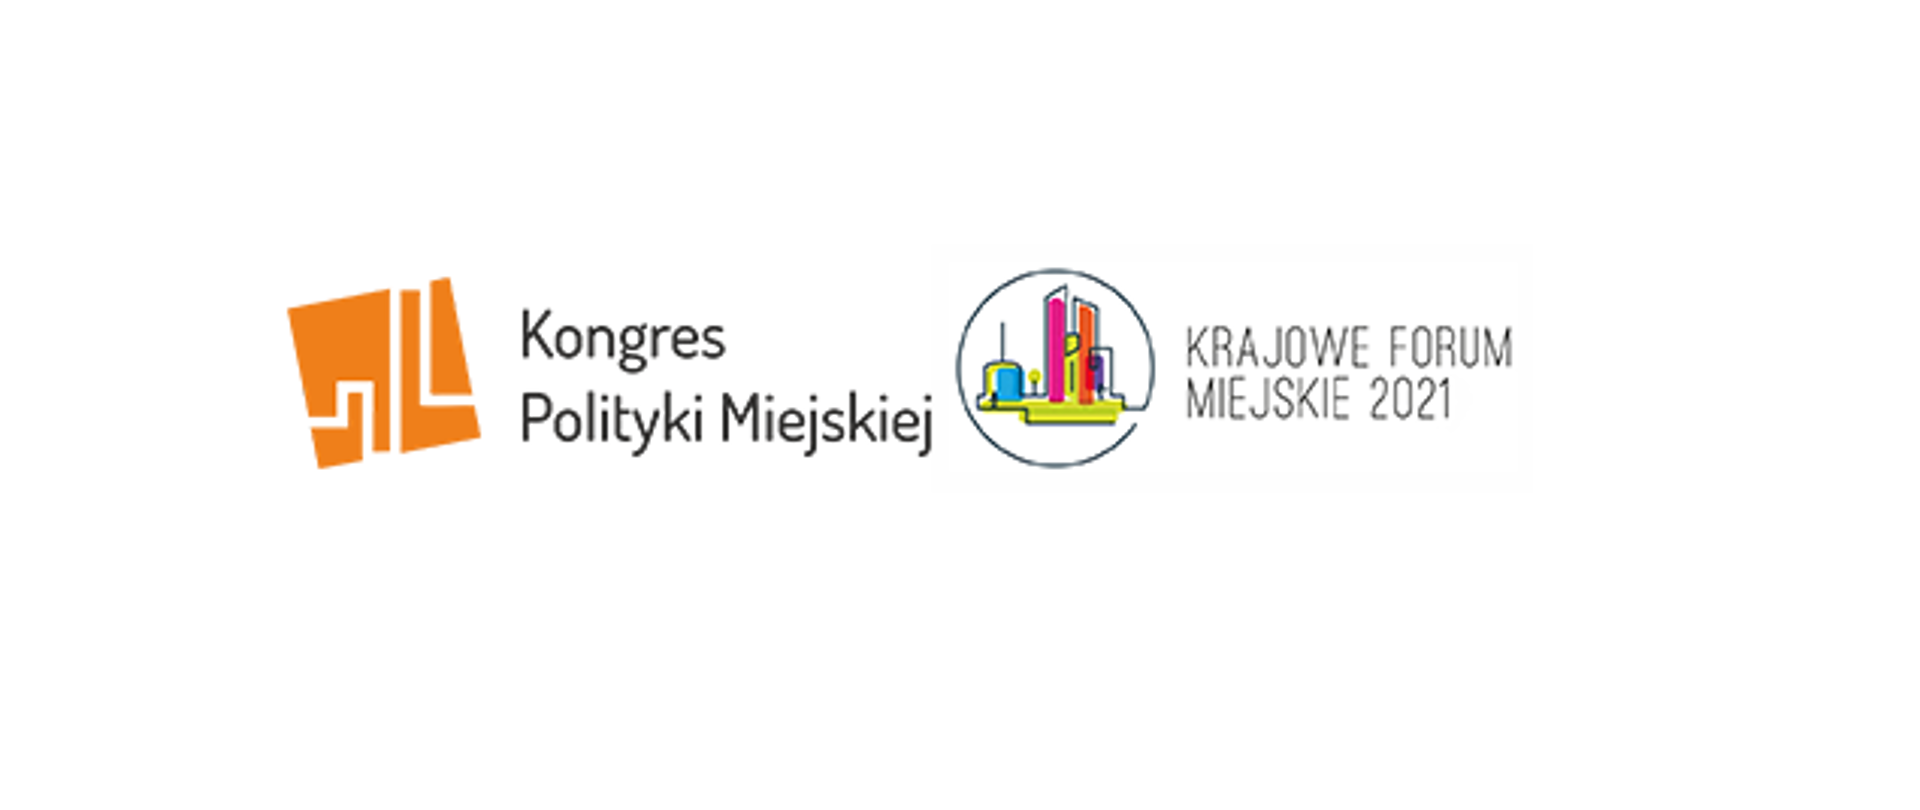 napisy przy logotypach: Kongres Polityki Miejskiej i Krajowe Forum Miejskie 2021